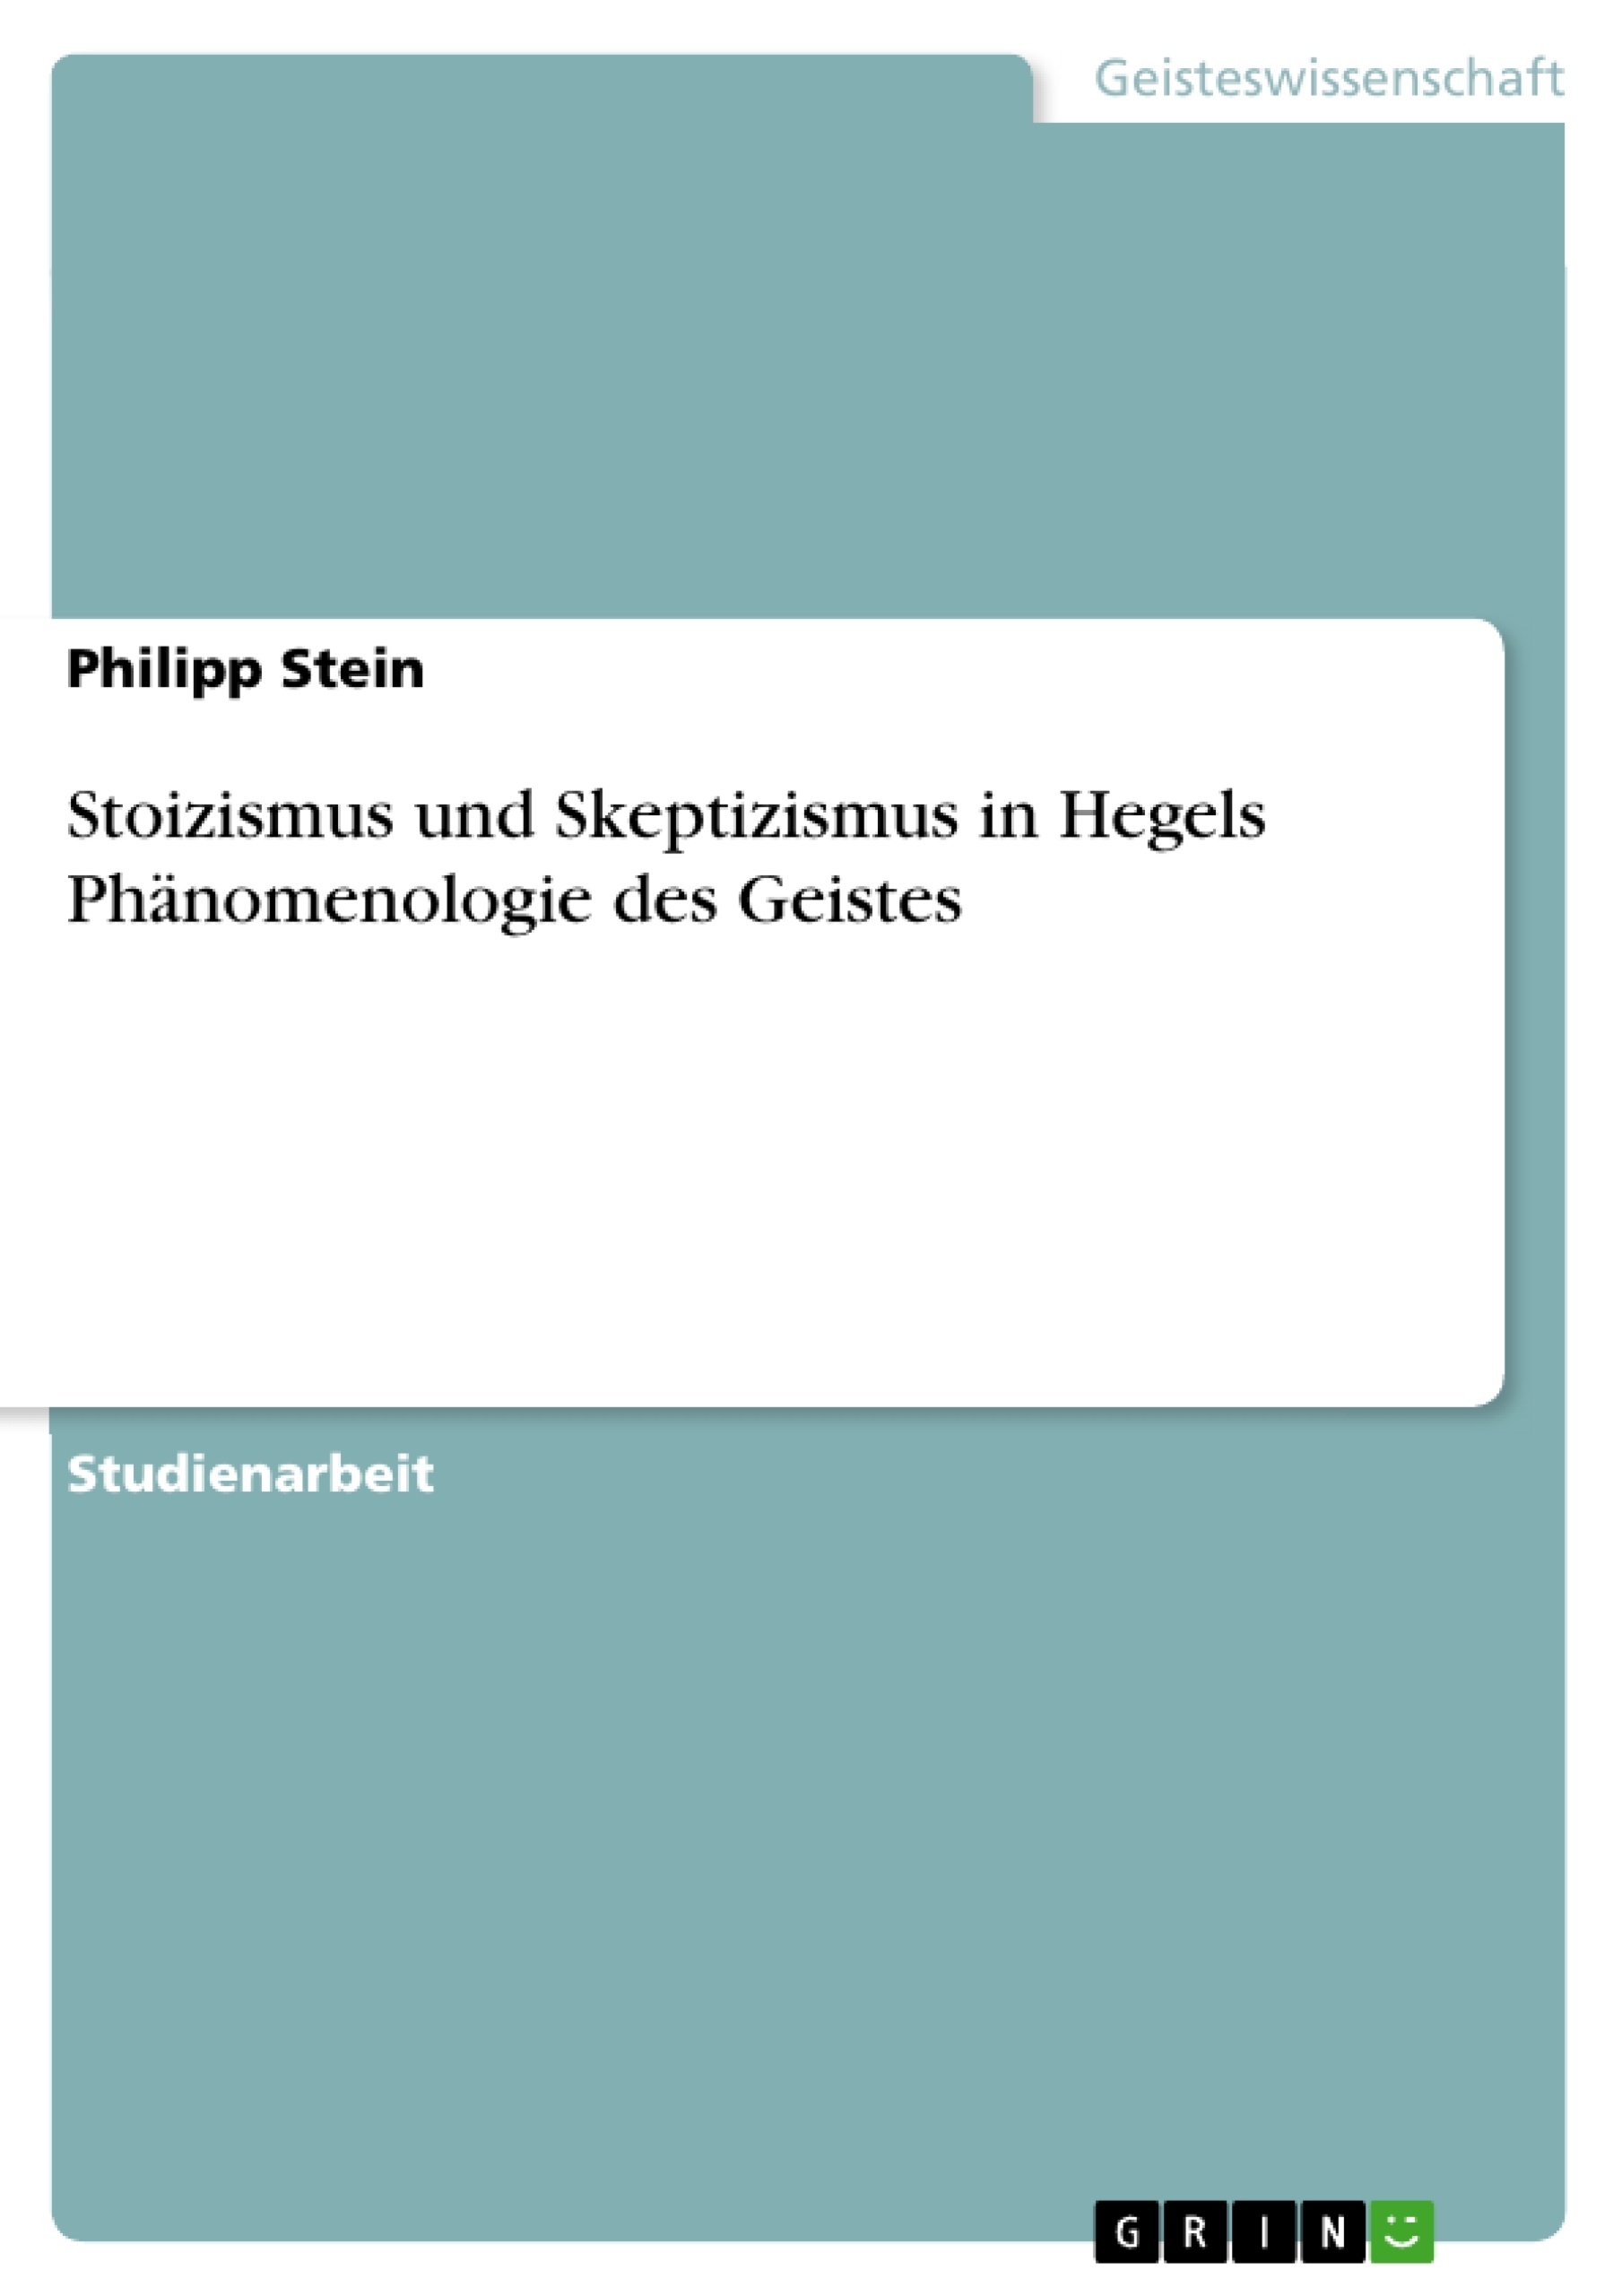 Title: Stoizismus und Skeptizismus in Hegels Phänomenologie des Geistes